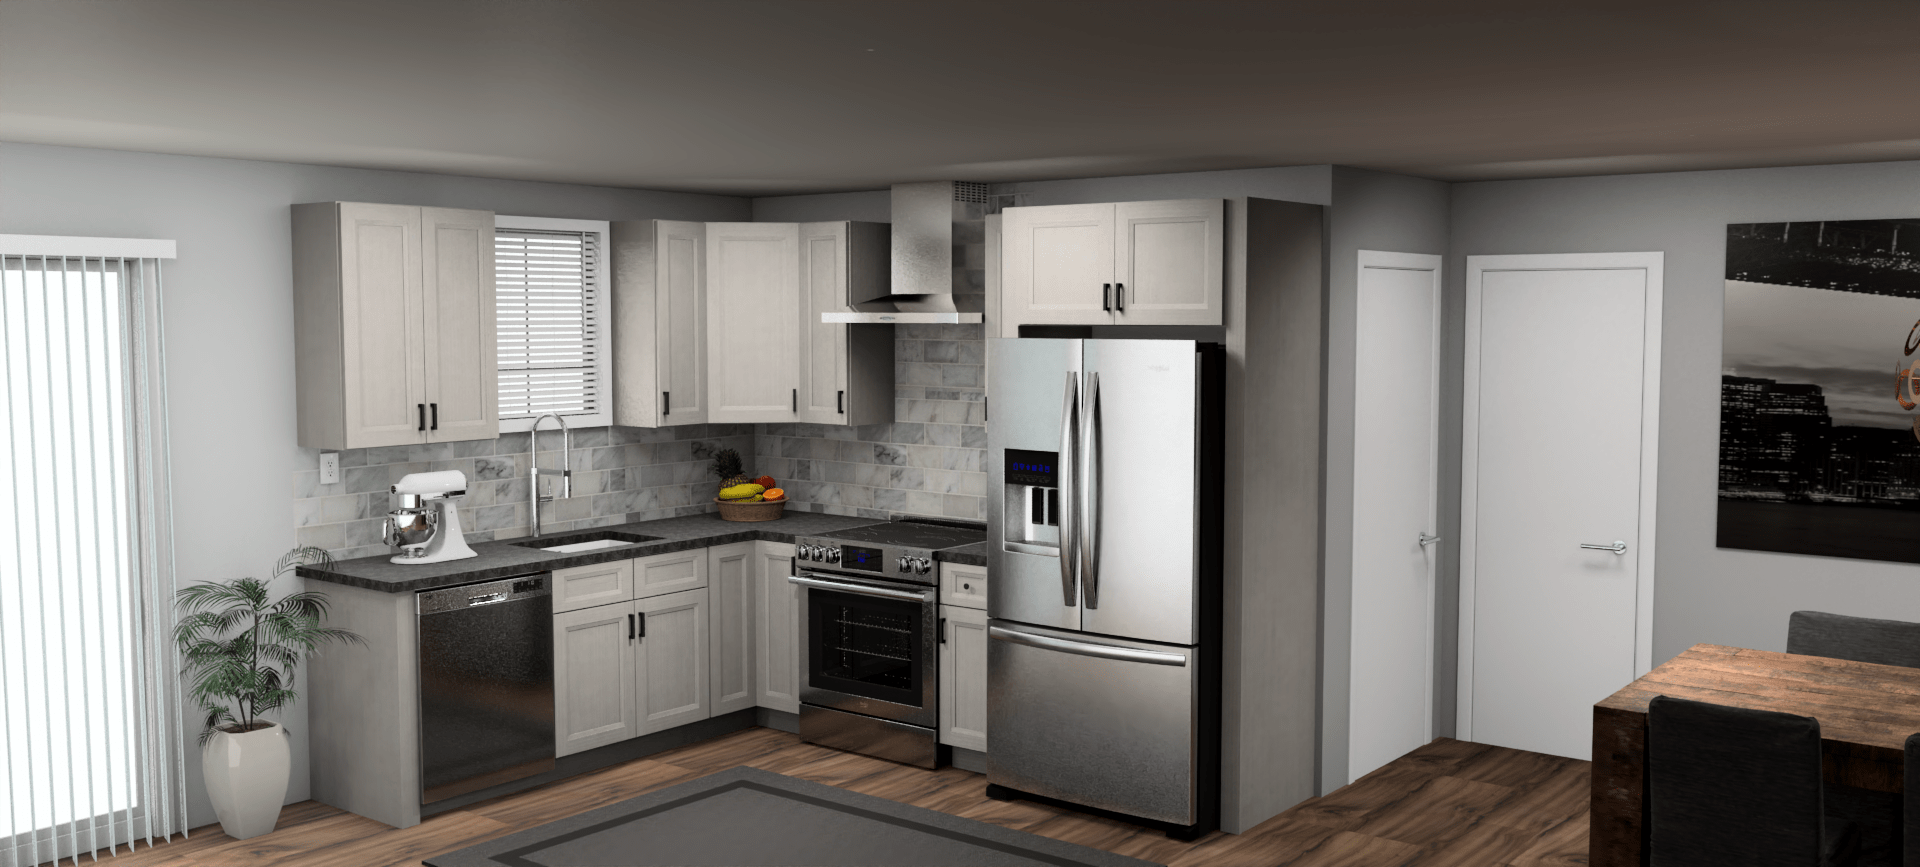 Fabuwood Allure Onyx Horizon 8 x 10 L Shaped Kitchen Main Layout Photo